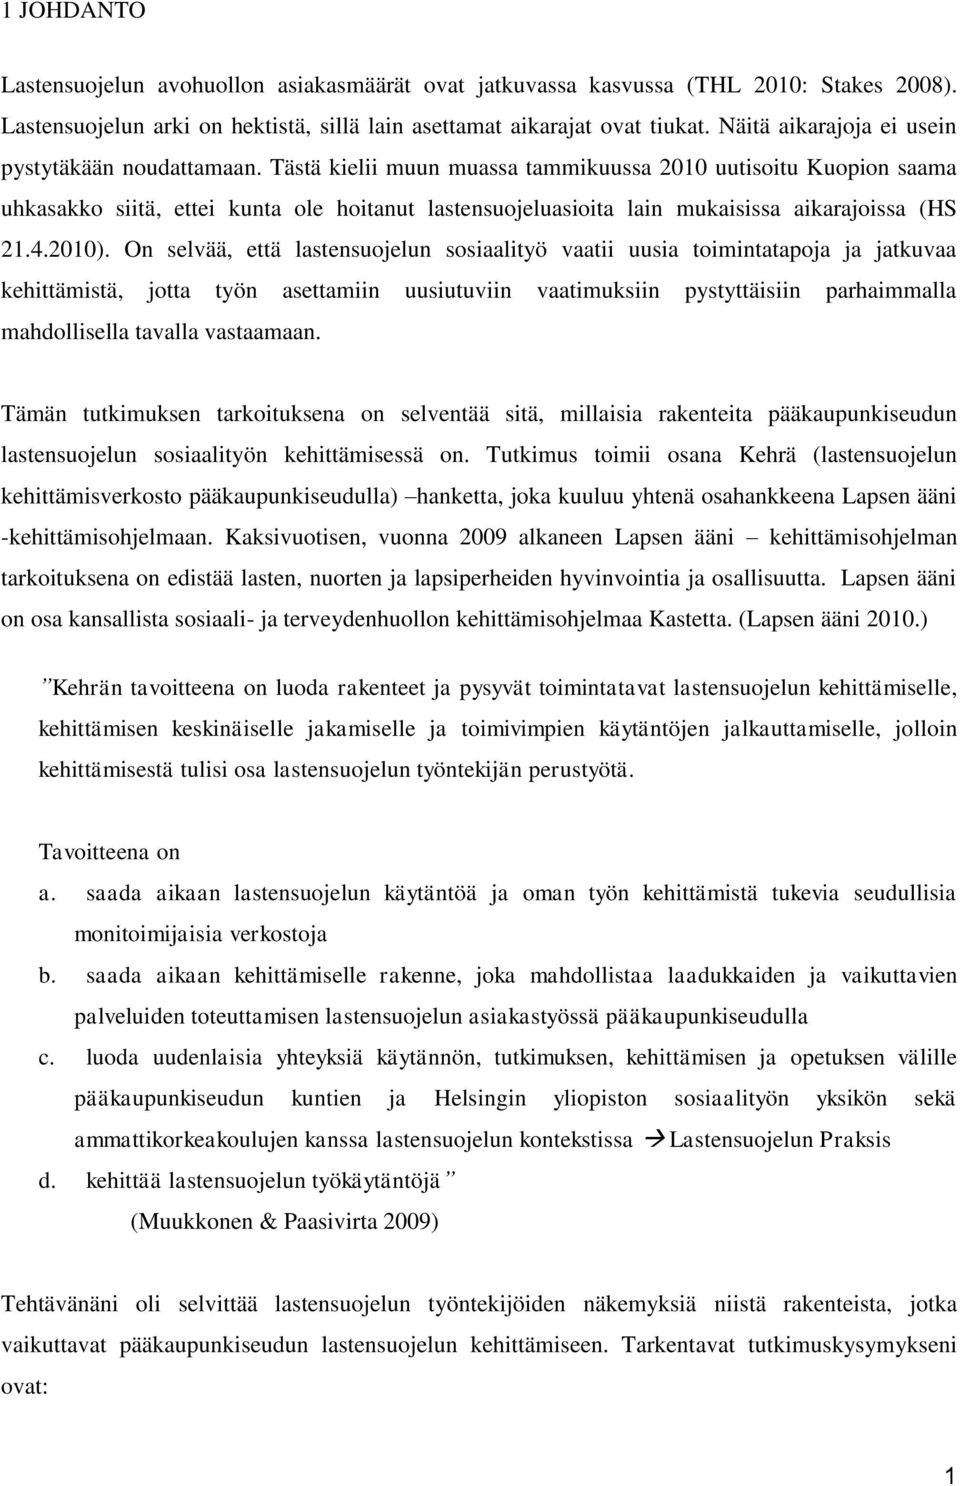 Tästä kielii muun muassa tammikuussa 2010 uutisoitu Kuopion saama uhkasakko siitä, ettei kunta ole hoitanut lastensuojeluasioita lain mukaisissa aikarajoissa (HS 21.4.2010).